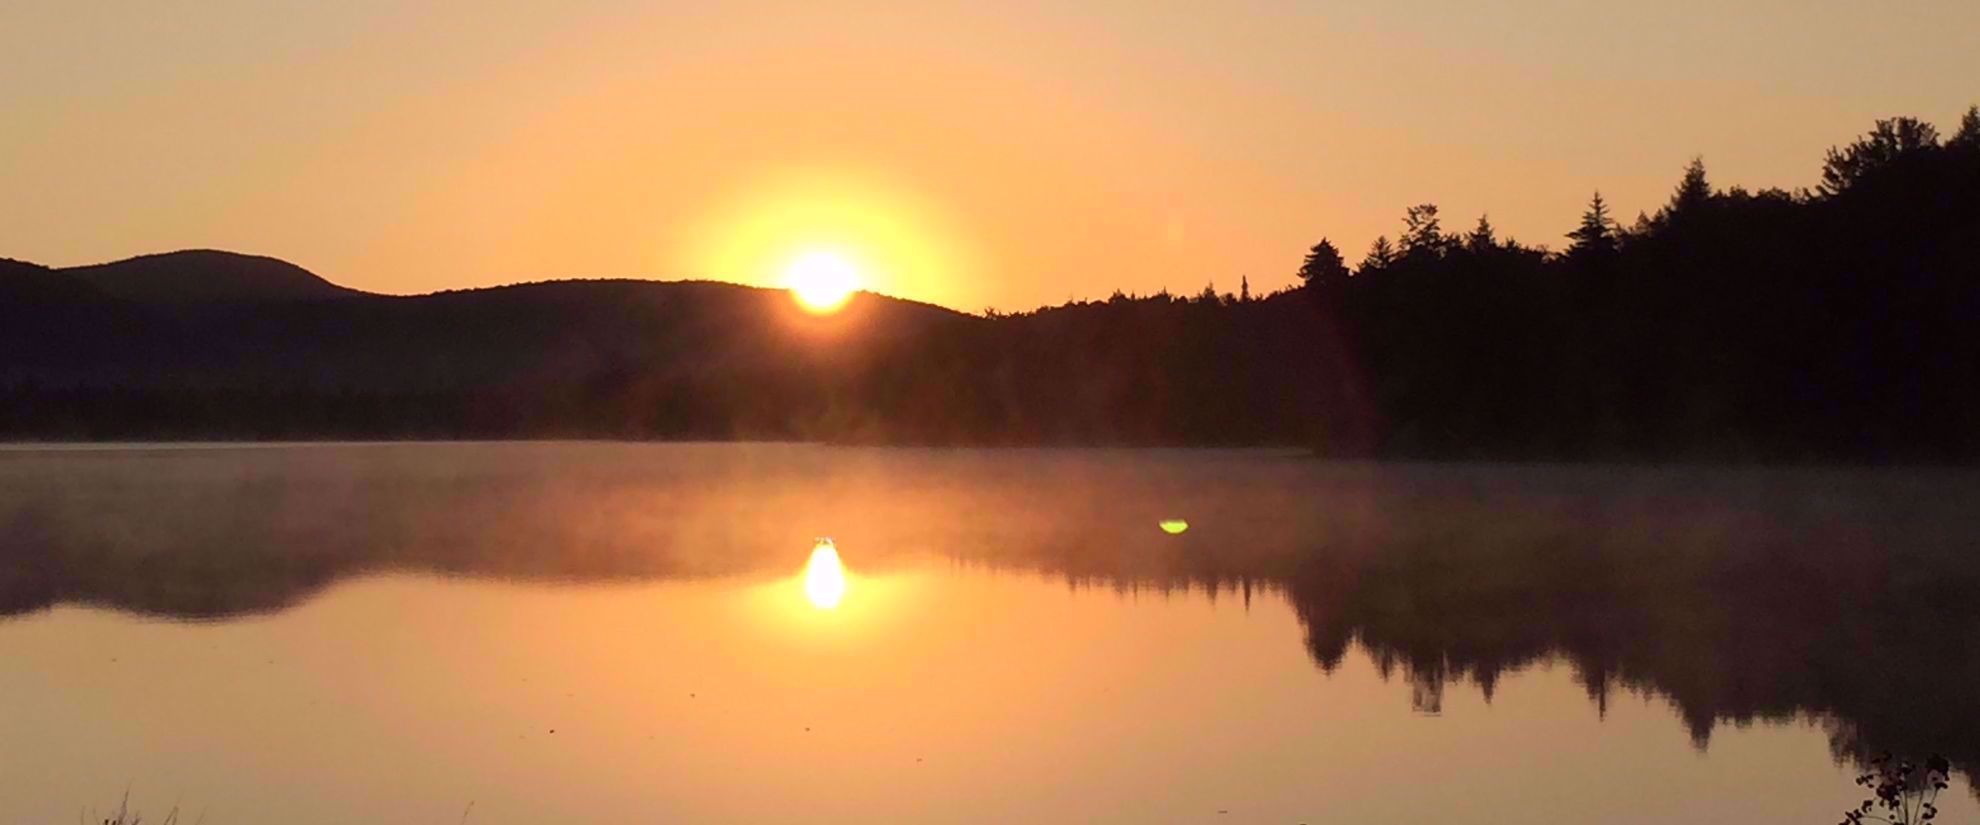 Golden sunset behind Adirondack mountain ridge by lake